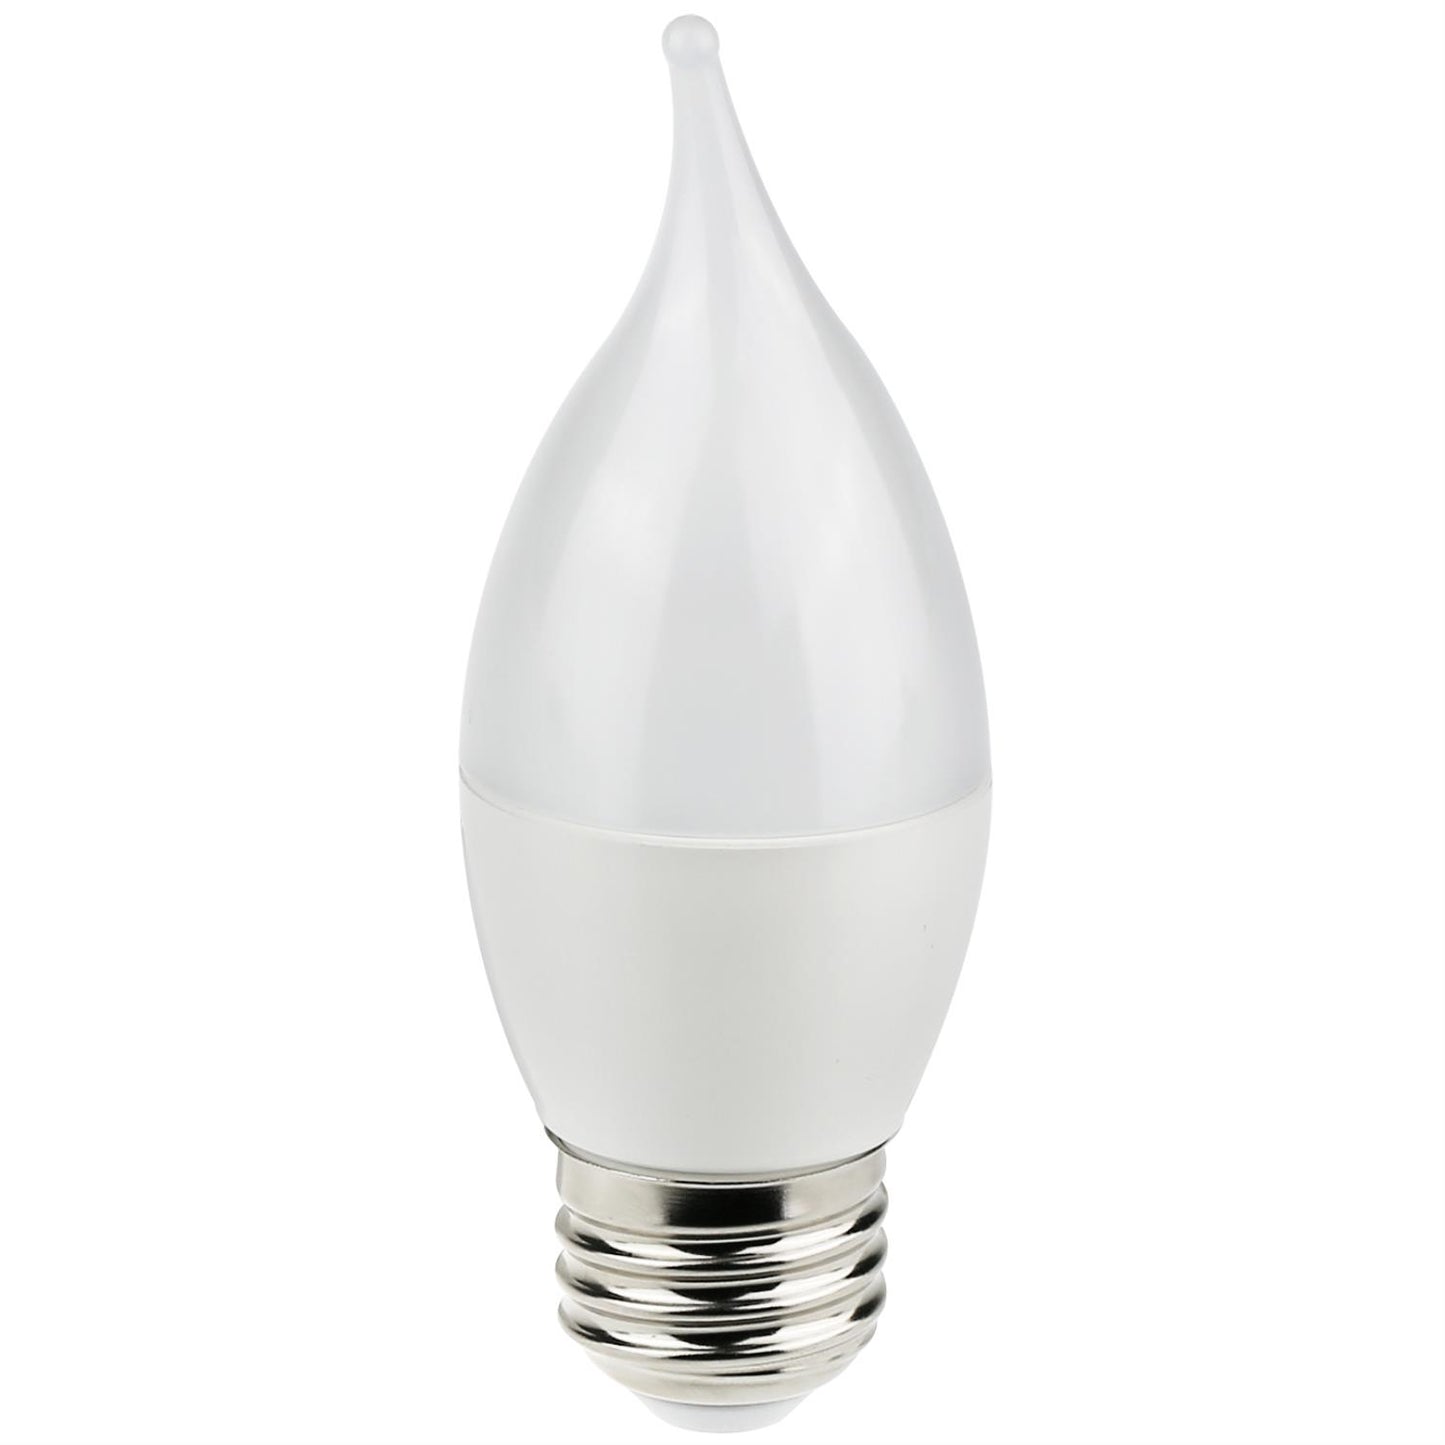 Sunlite LED Flame Tip Chandelier 7W (60W Equivalent) Light Bulb Medium (E26) Base, Warm White